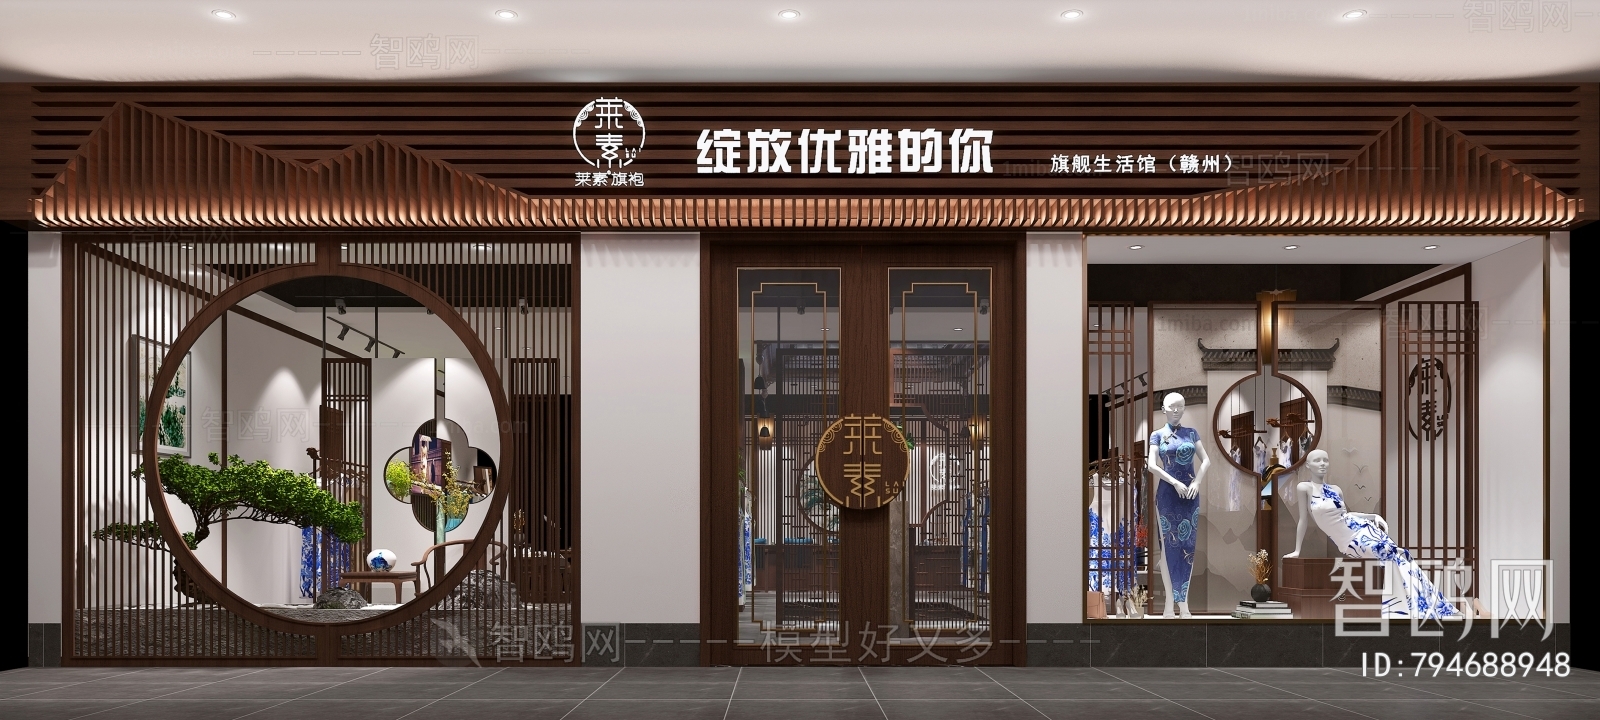 新中式旗袍店